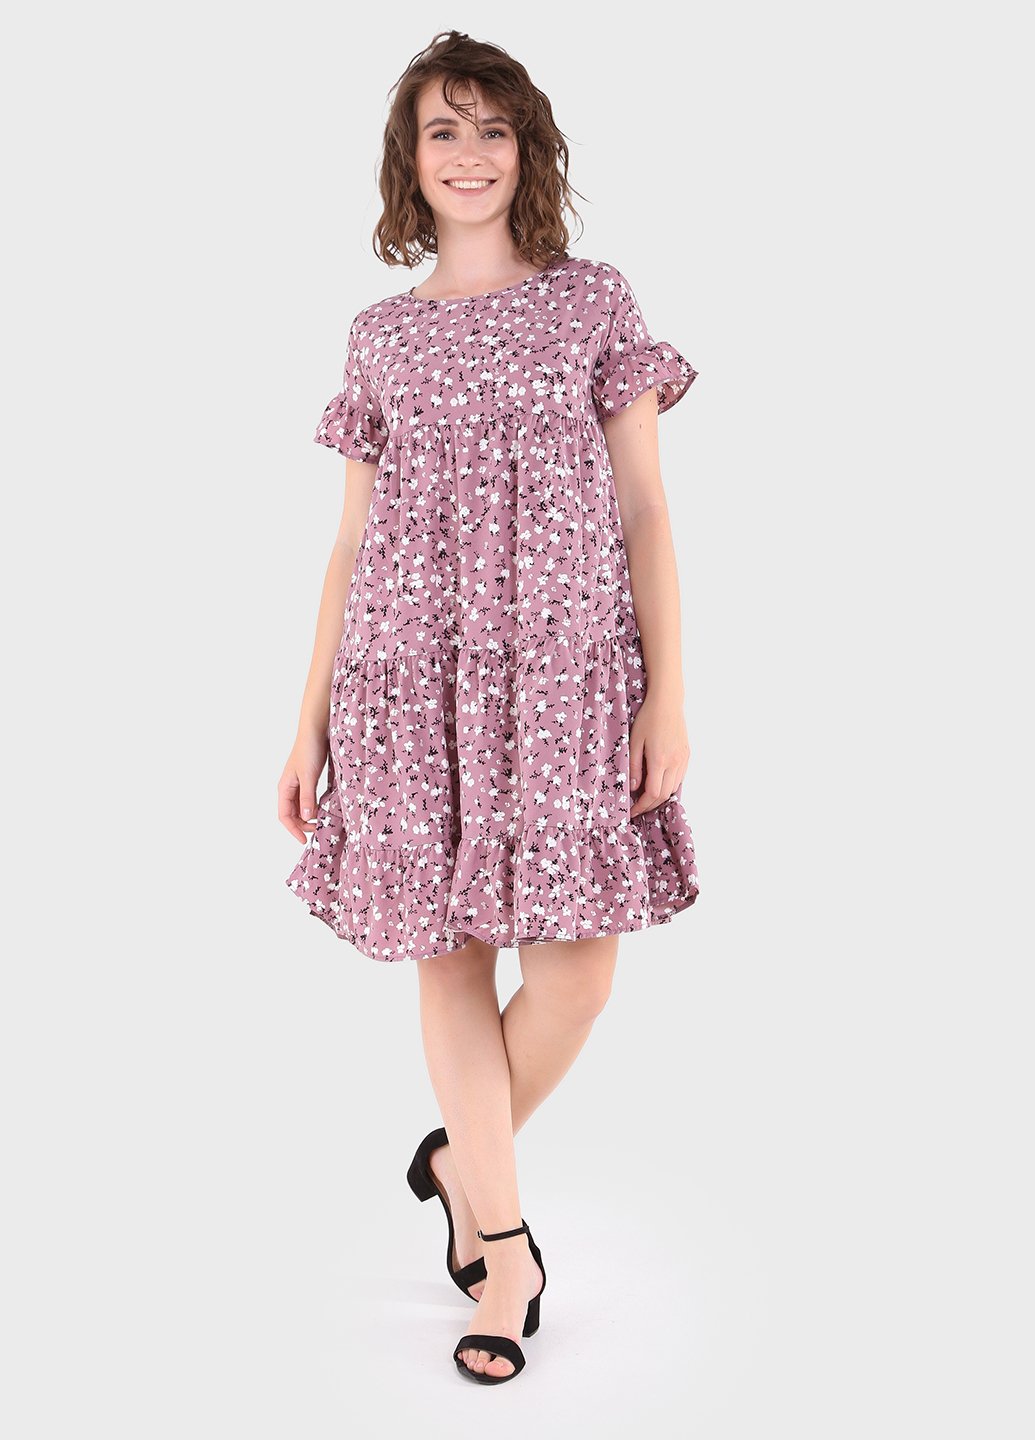 Купить Летнее хлопковое платье сиреневого цвета Merlini Цветы 700000021, размер 42-44 в интернет-магазине